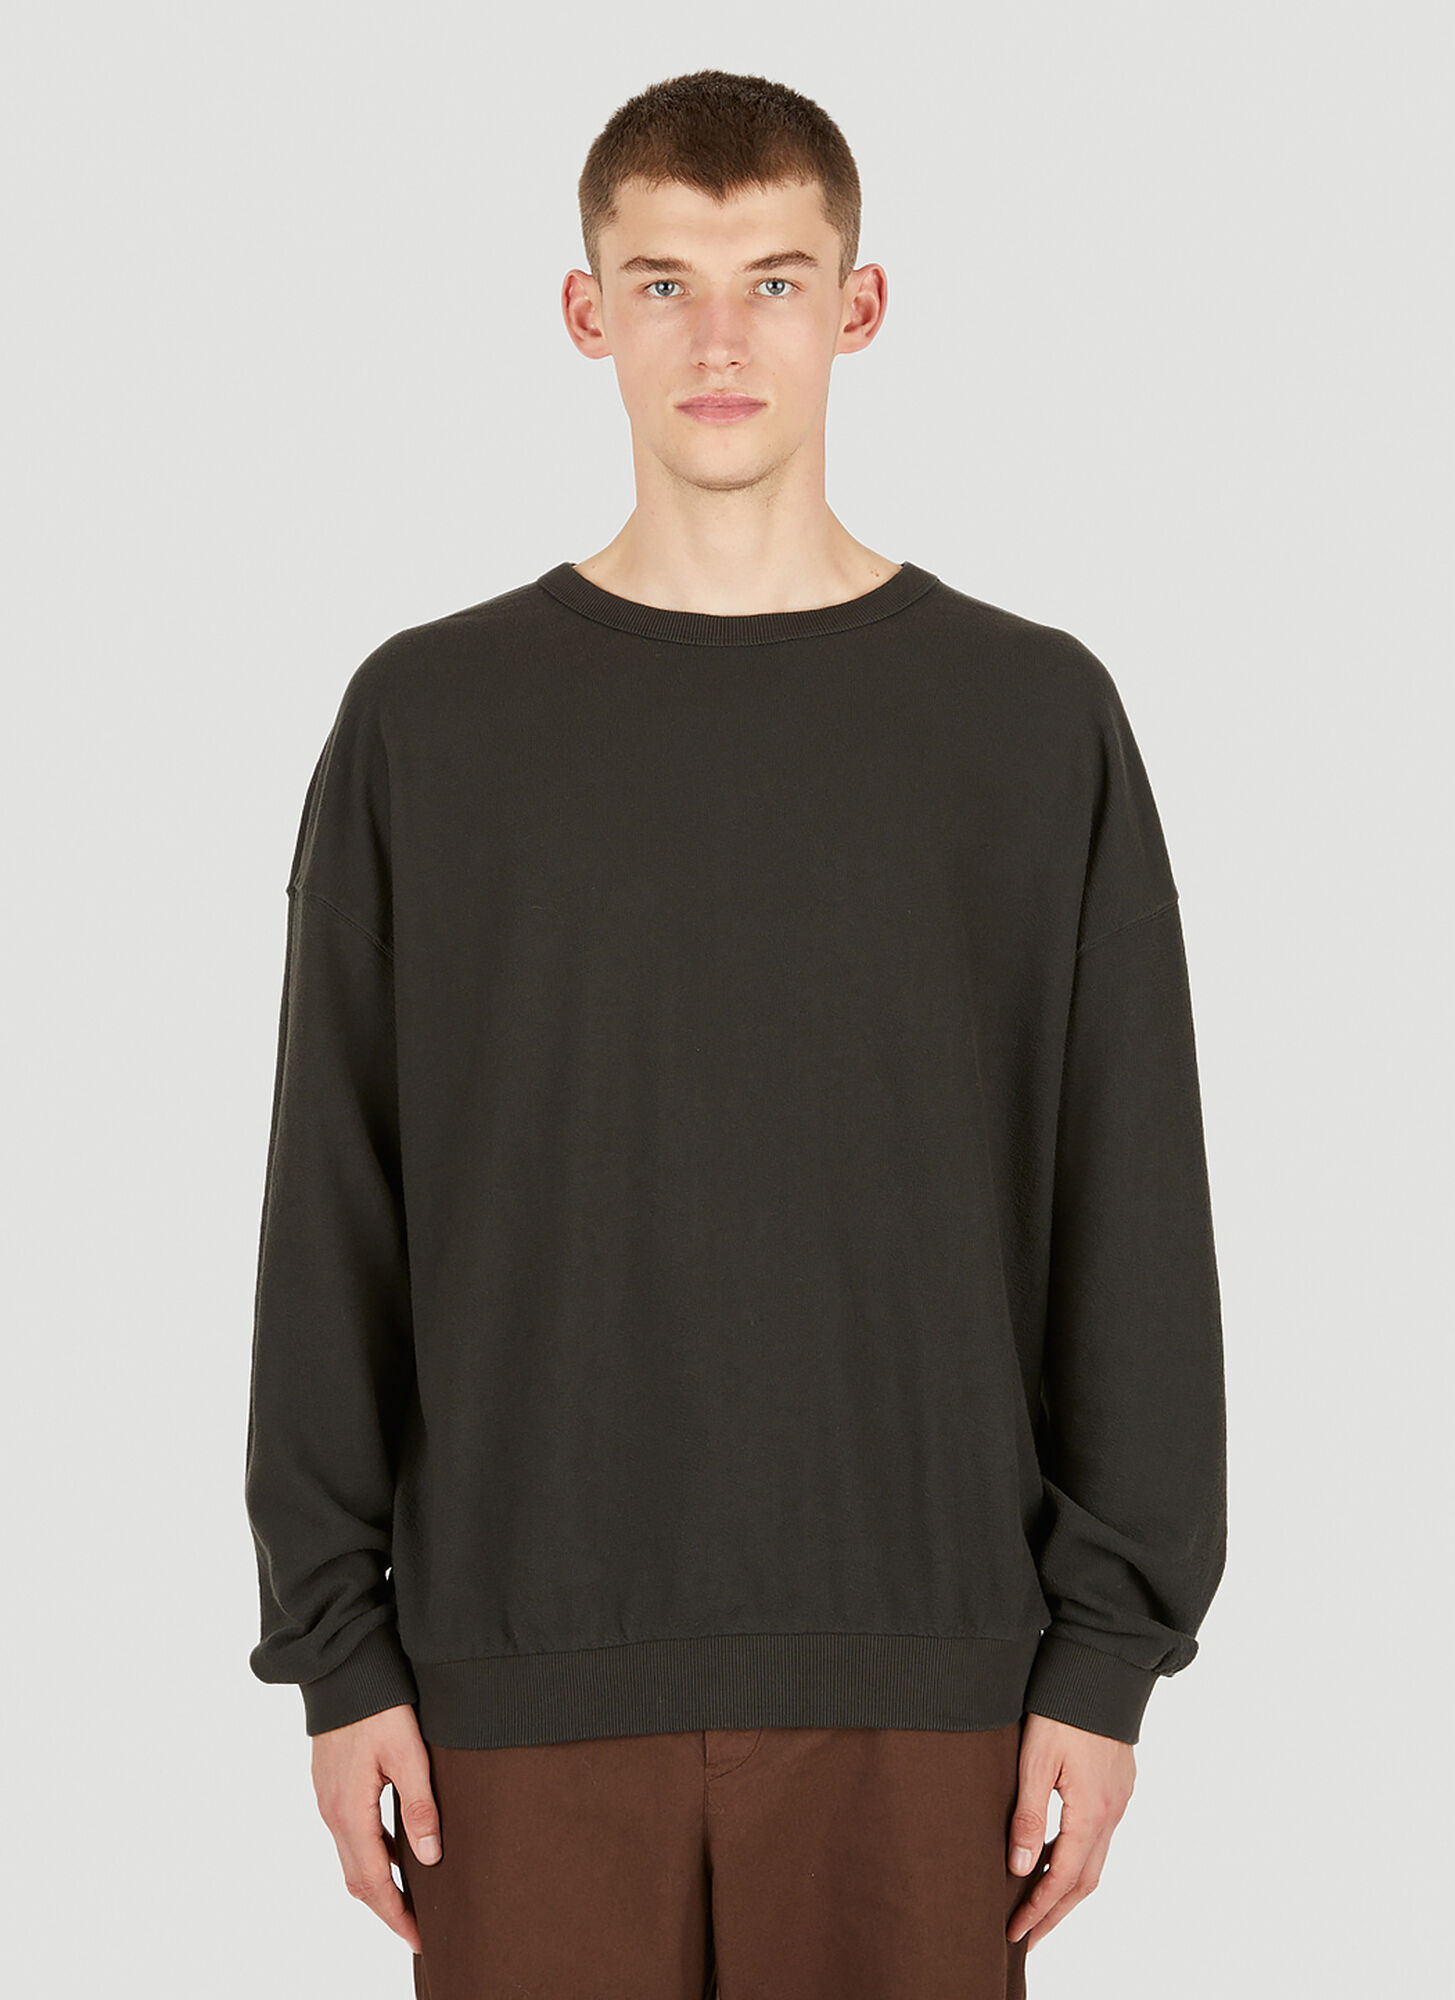 Applied Art Forms Loose Fit Sweatshirt In Black